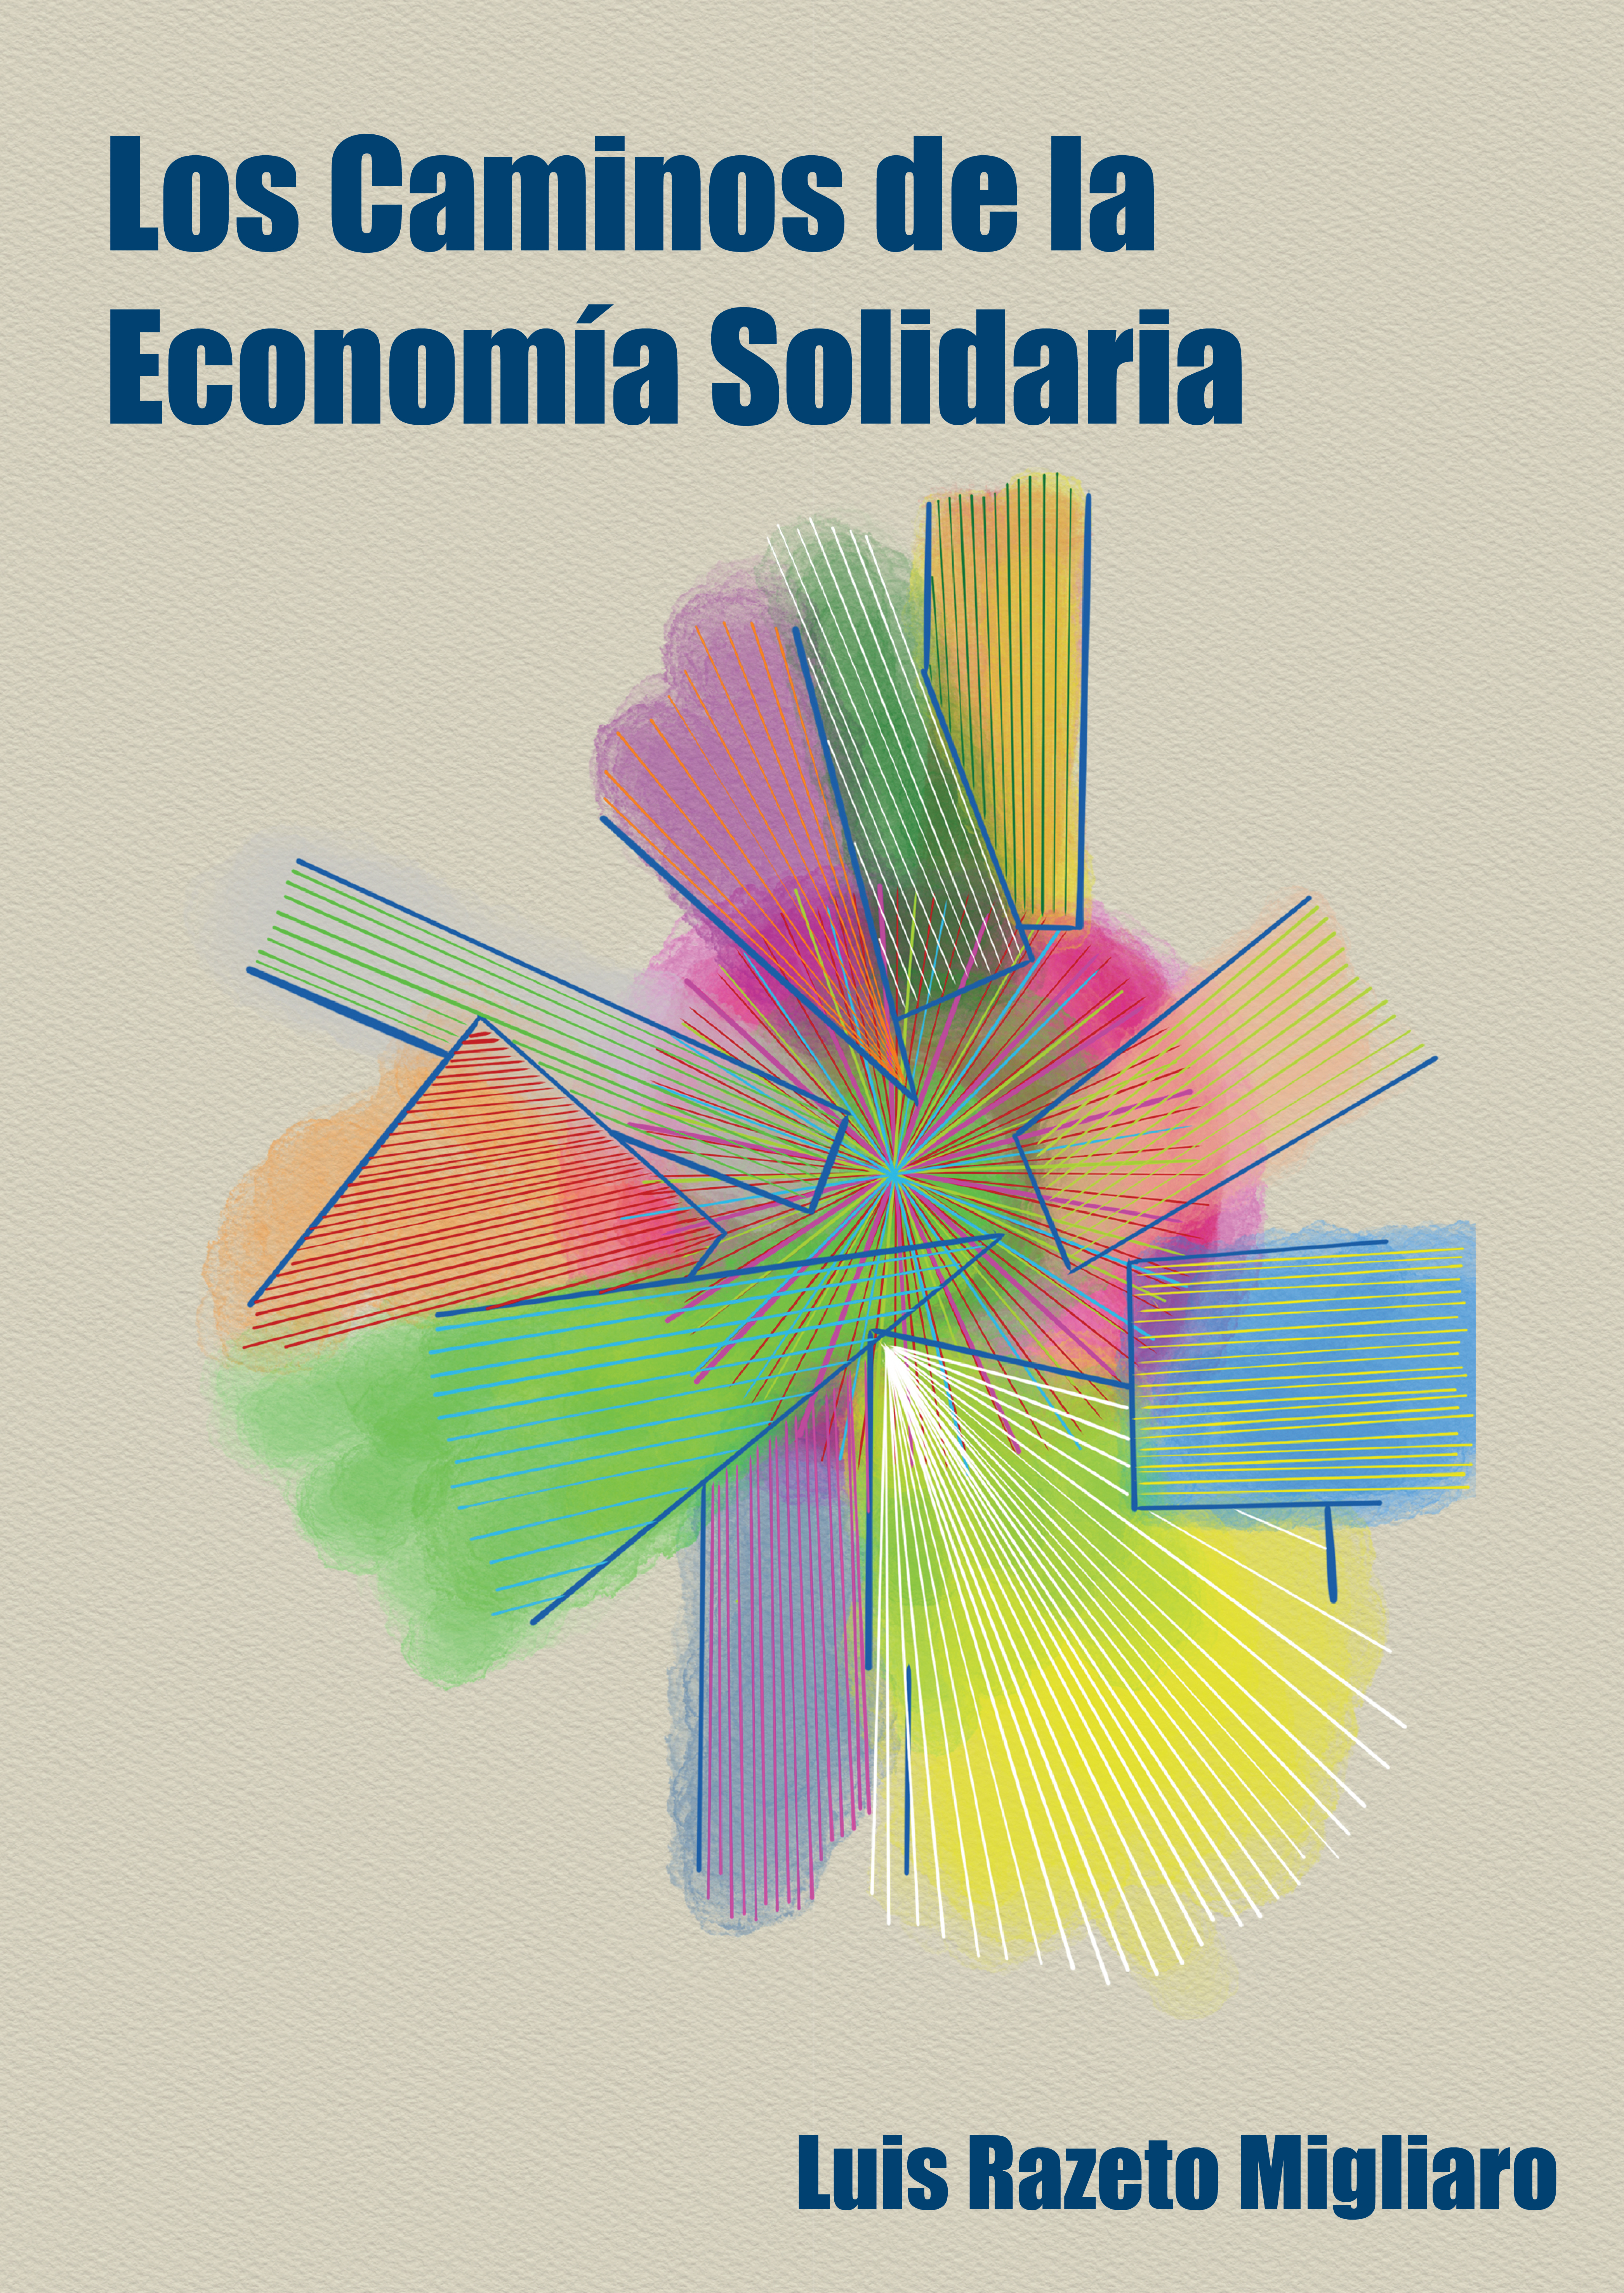 Los caminos de la economía solidaria